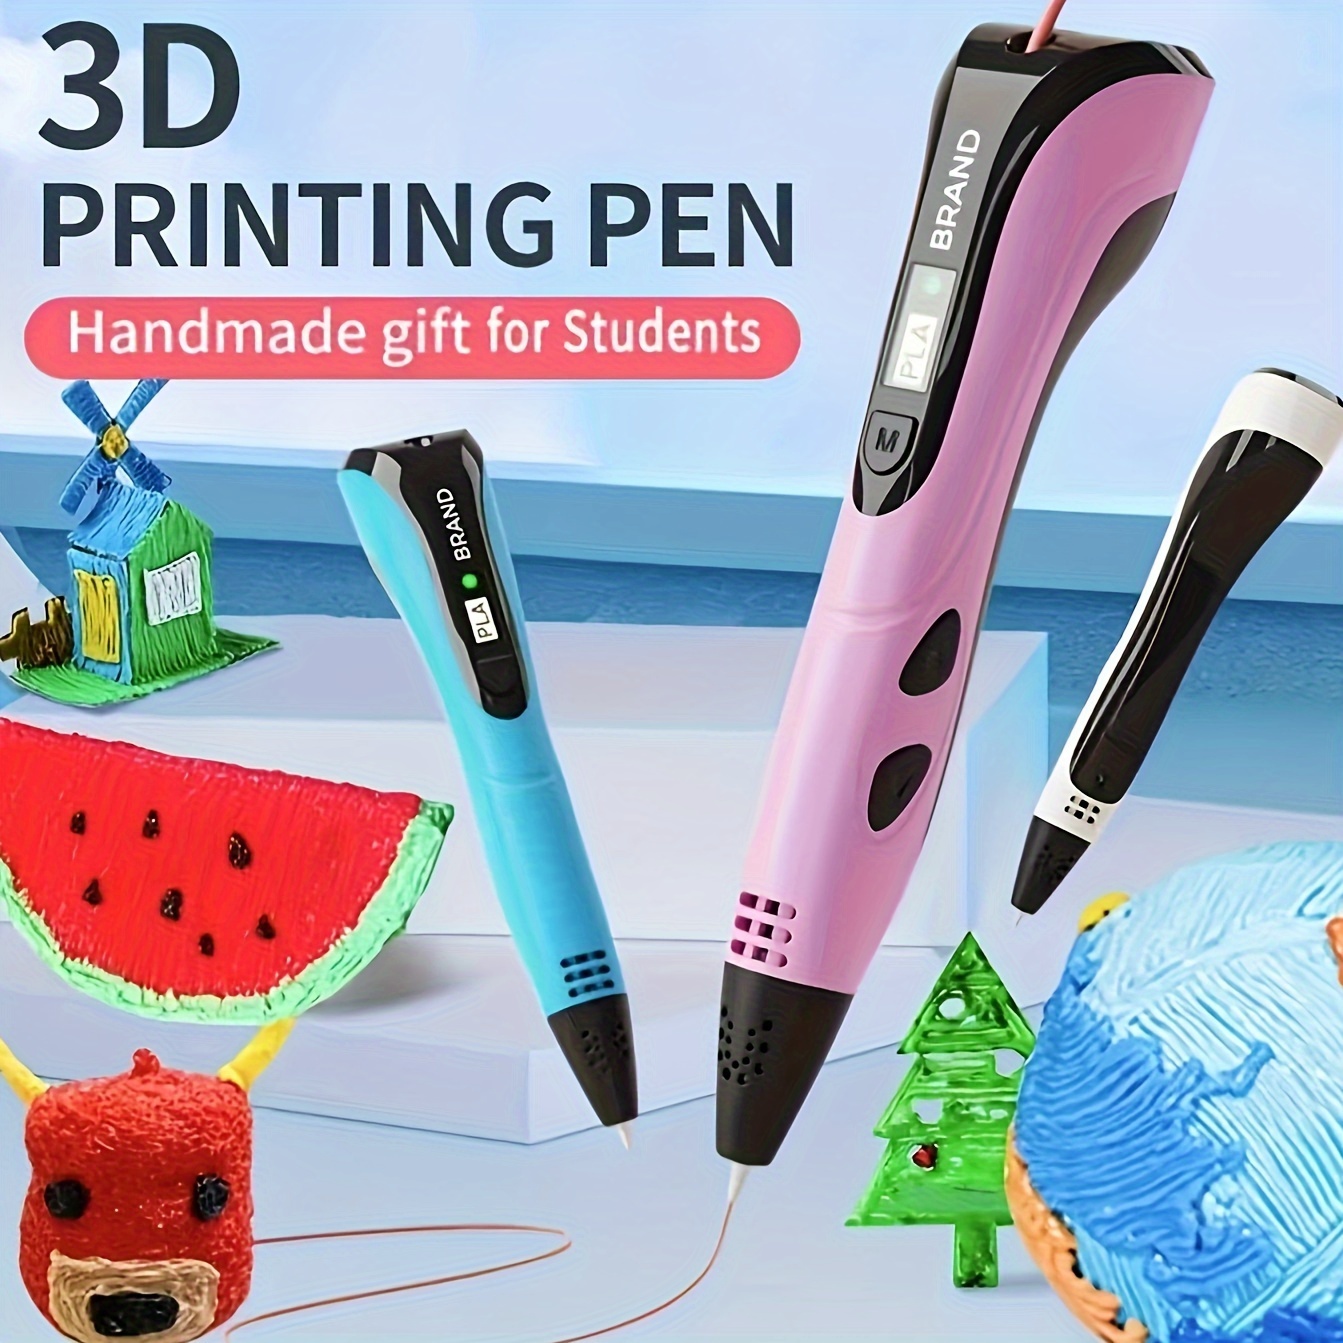 4 juego de bolígrafo de impresión 3D para juguetes de pintura para niños y  adultos, impresión a baja temperatura, incluye bolígrafo 3D, 3 colores  aleatorios, 6 metros de filamento PLA, cable USB